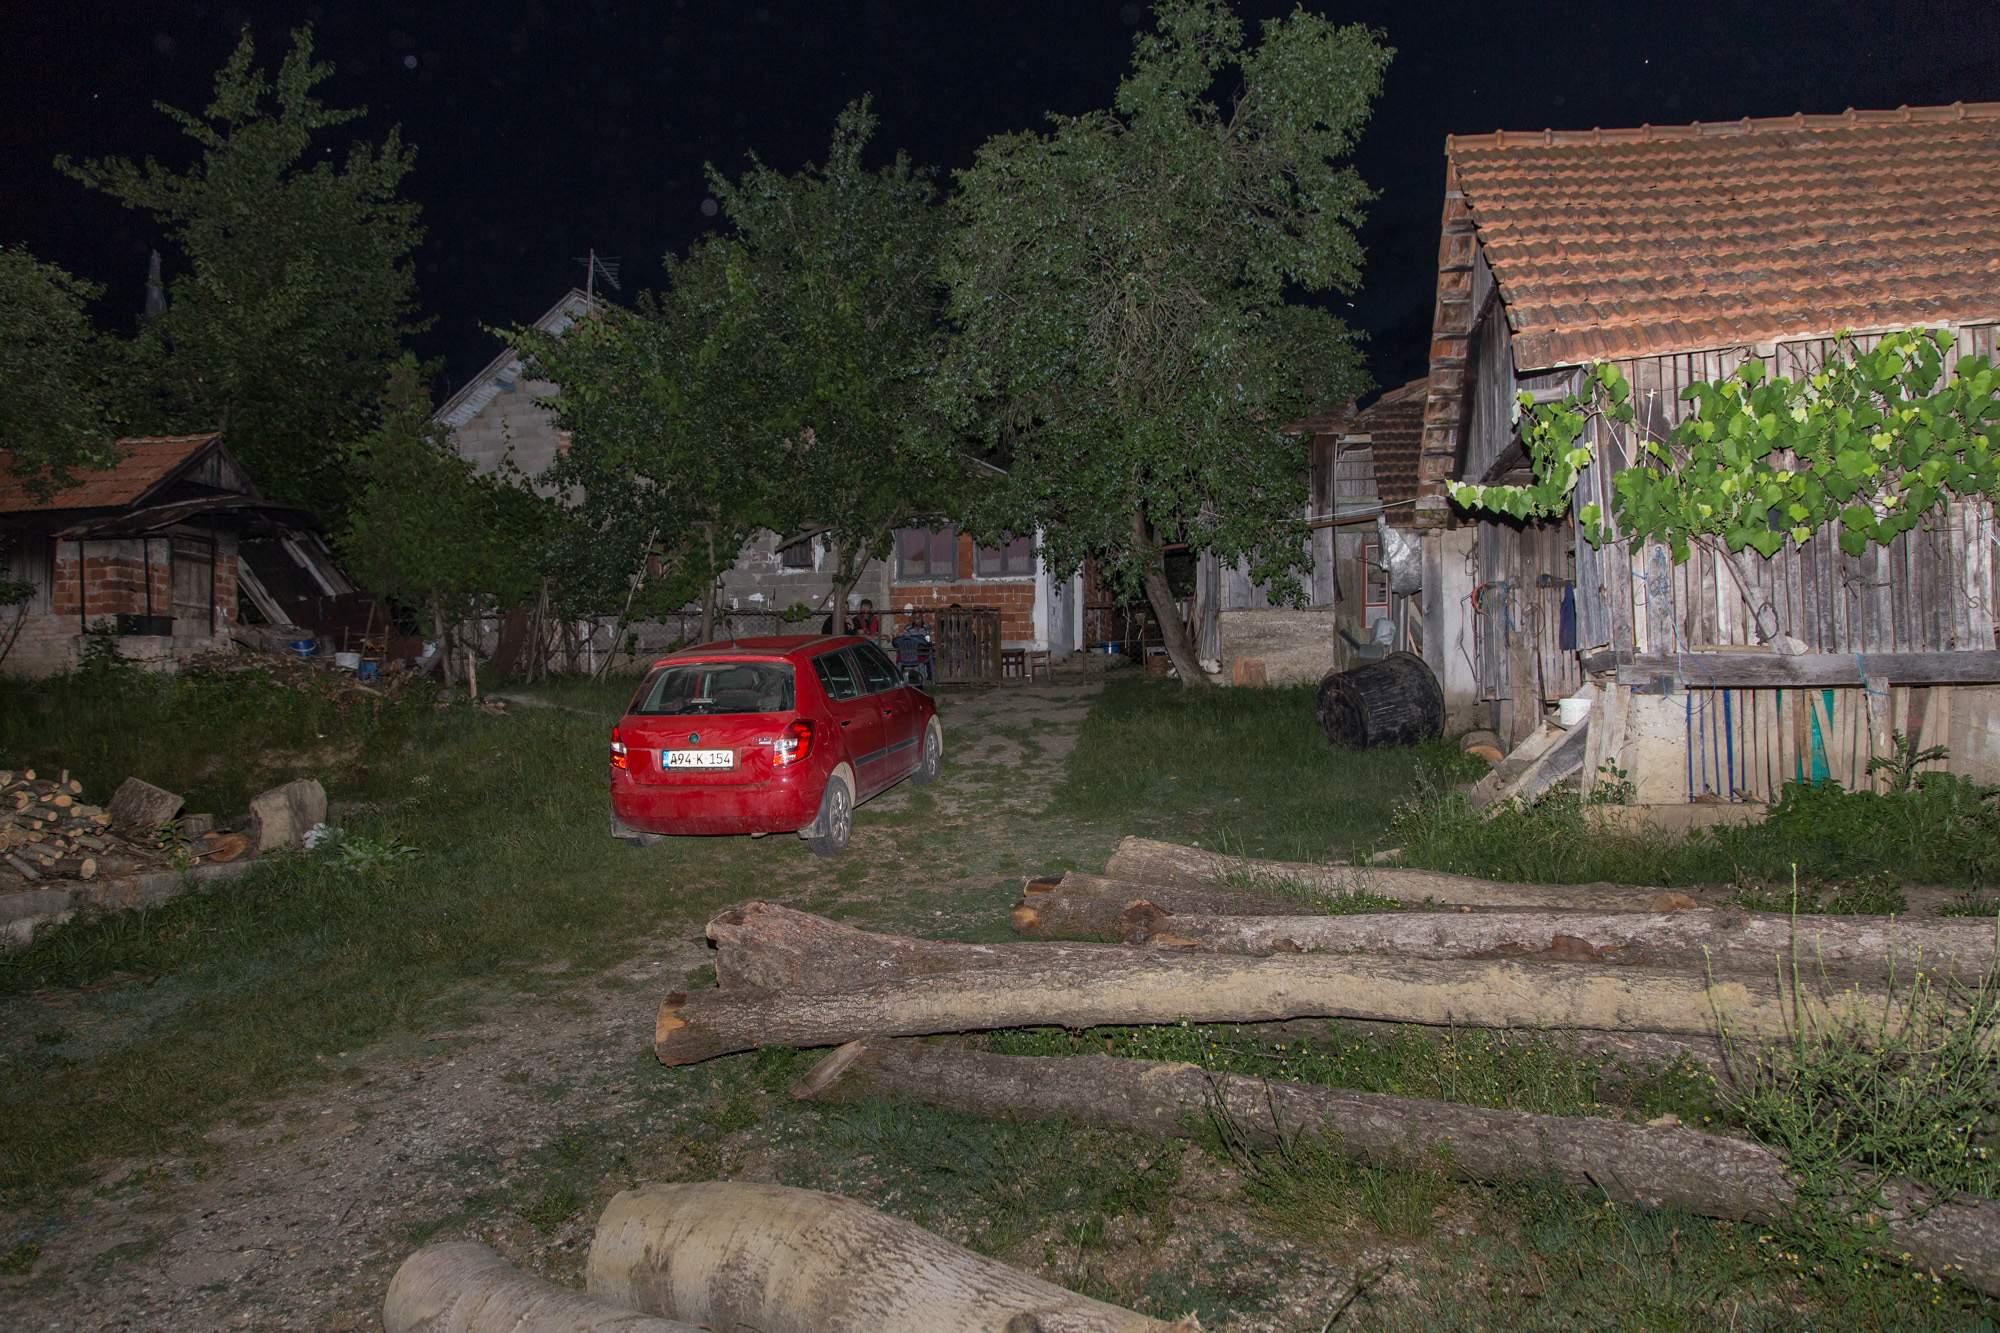 Kuća ubijenog Mile Tubića u Dizdarlijama kod Bosanske Dubice - Avaz